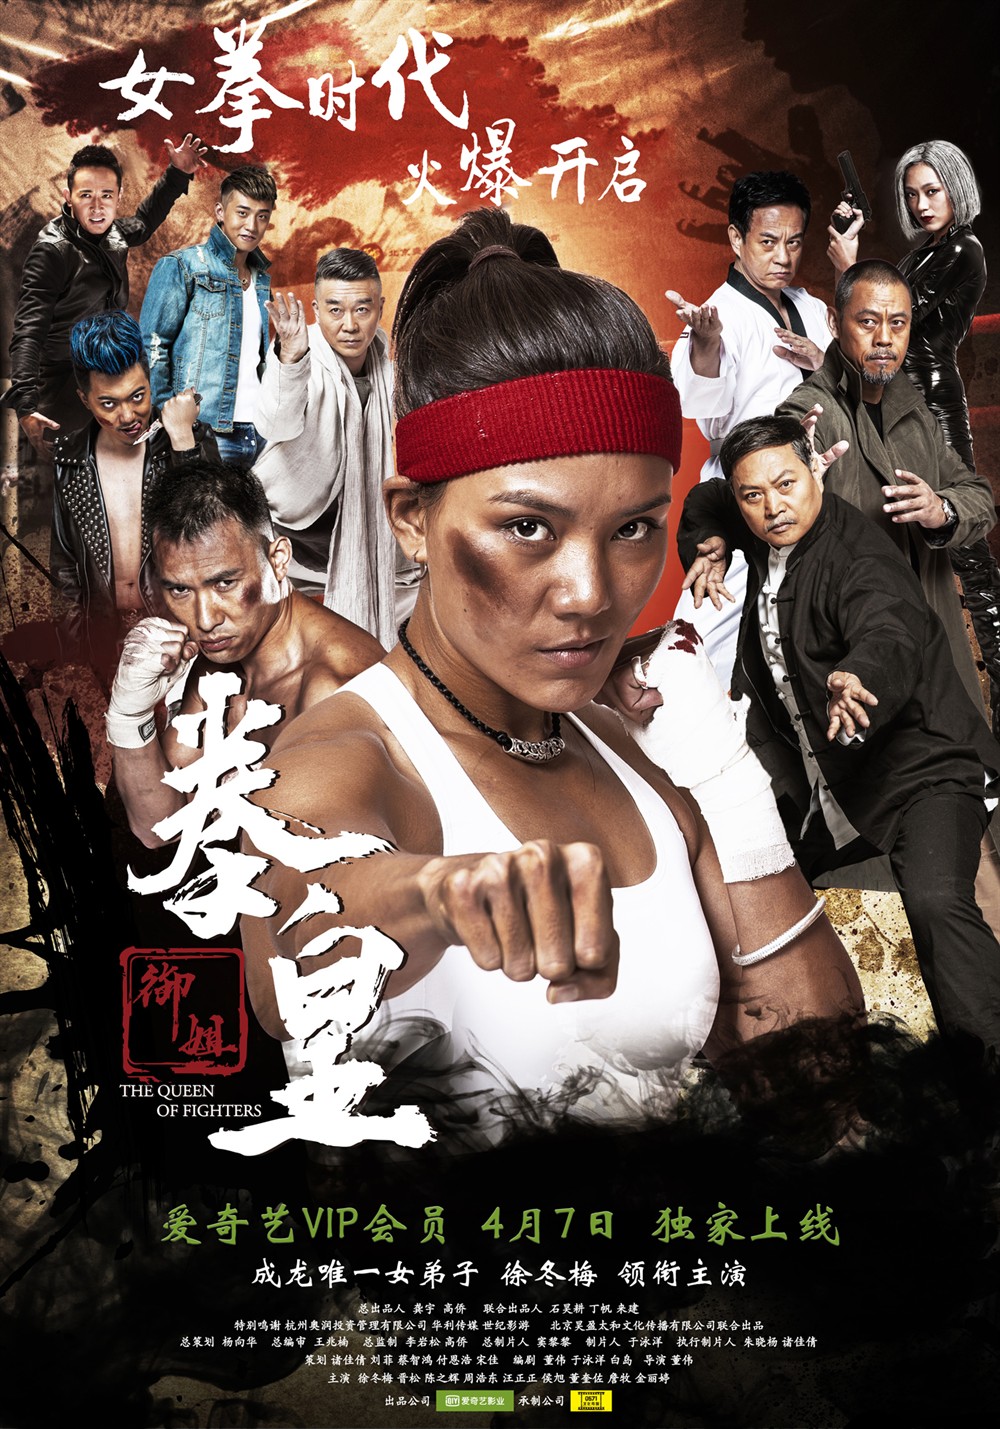 Королева бойцов (The Queen of Fighters, 2016) :: Все о кино Гонконга, Китая...